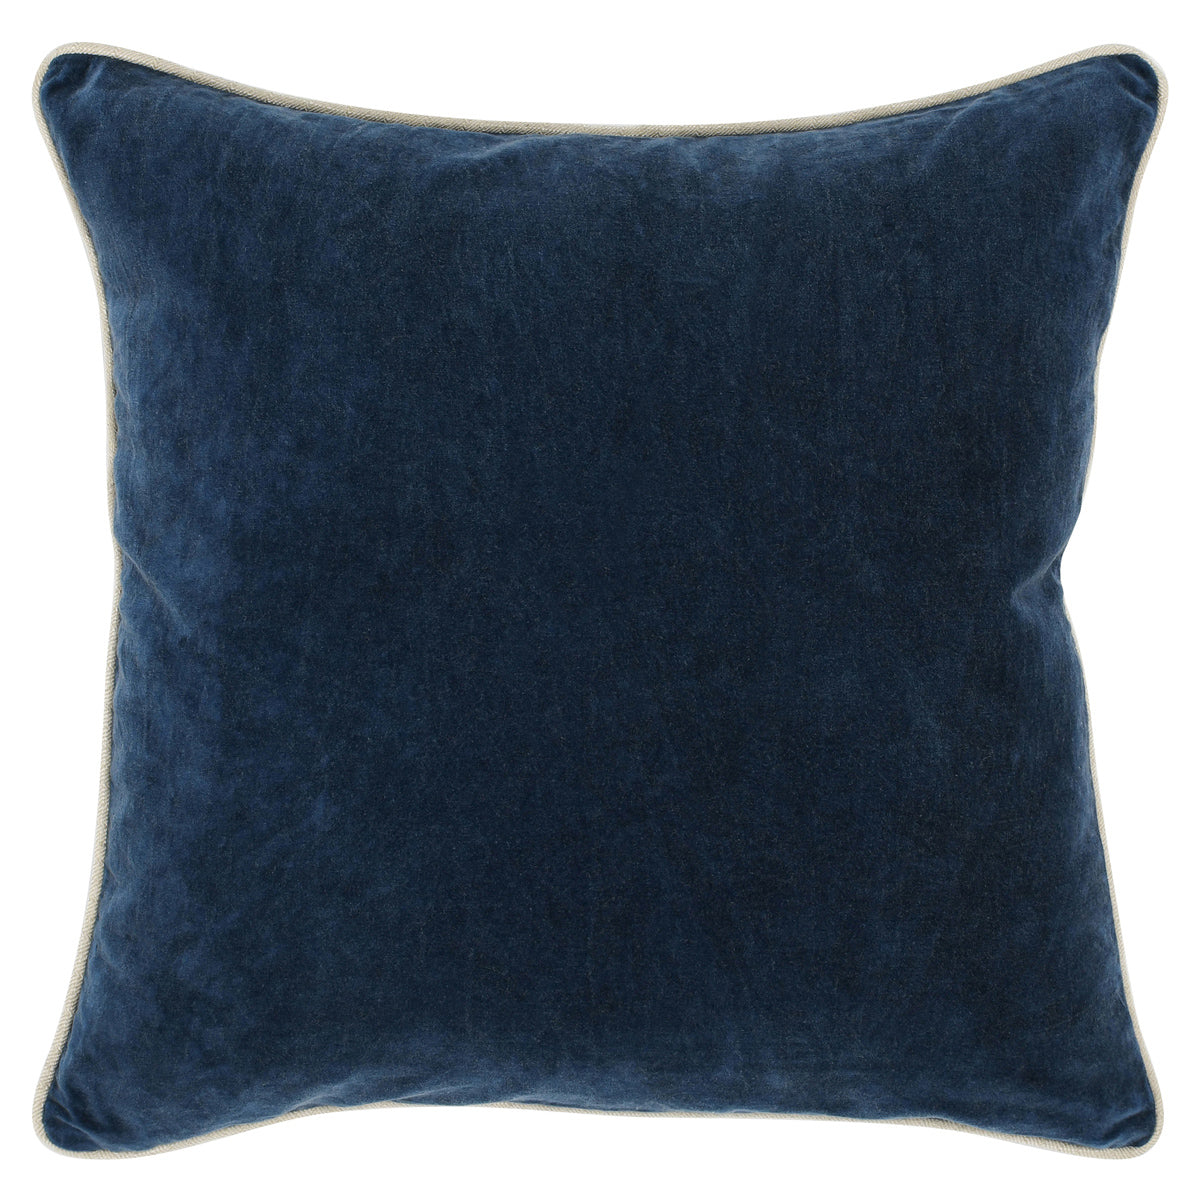 Heirloom Velvet Navy Pillow 22 x 22